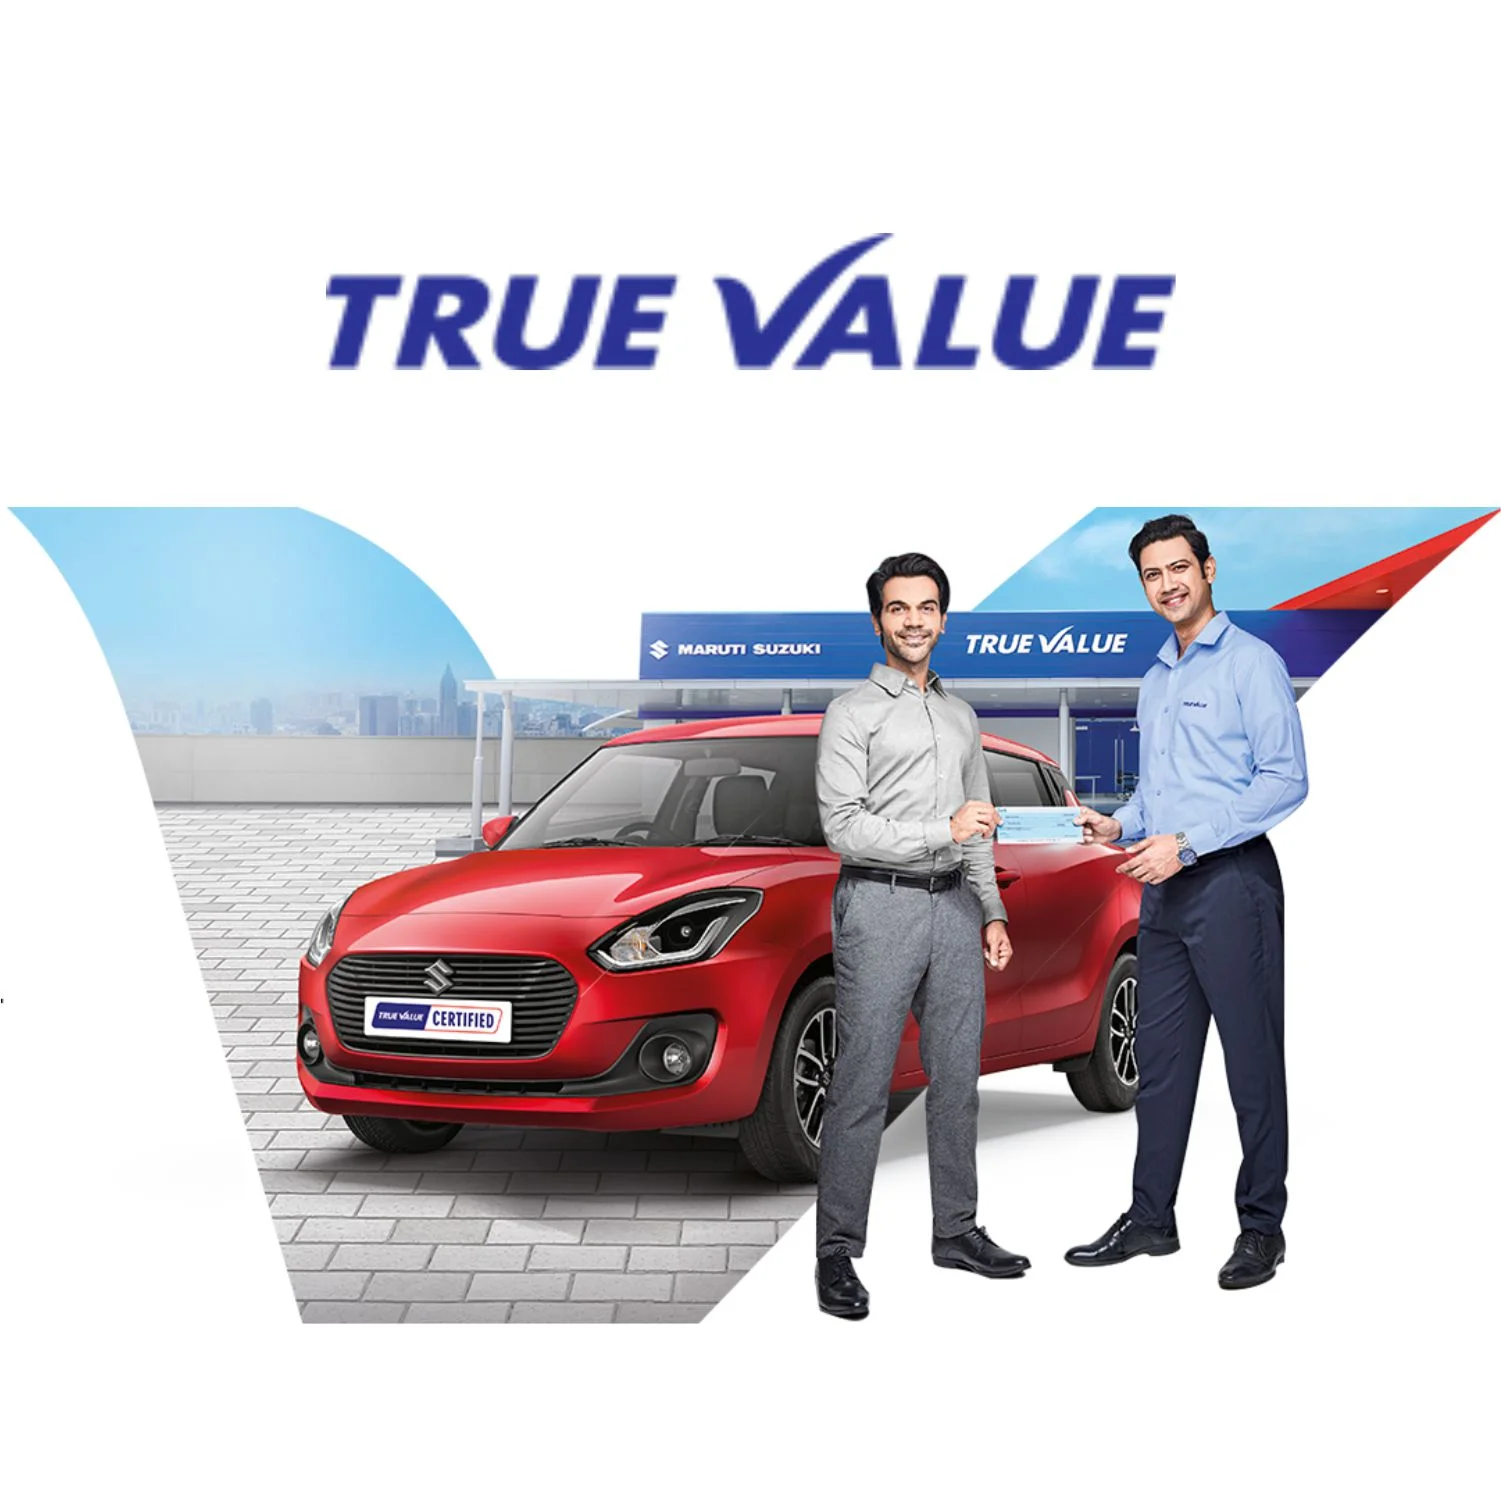 True value Indore Patel Motors